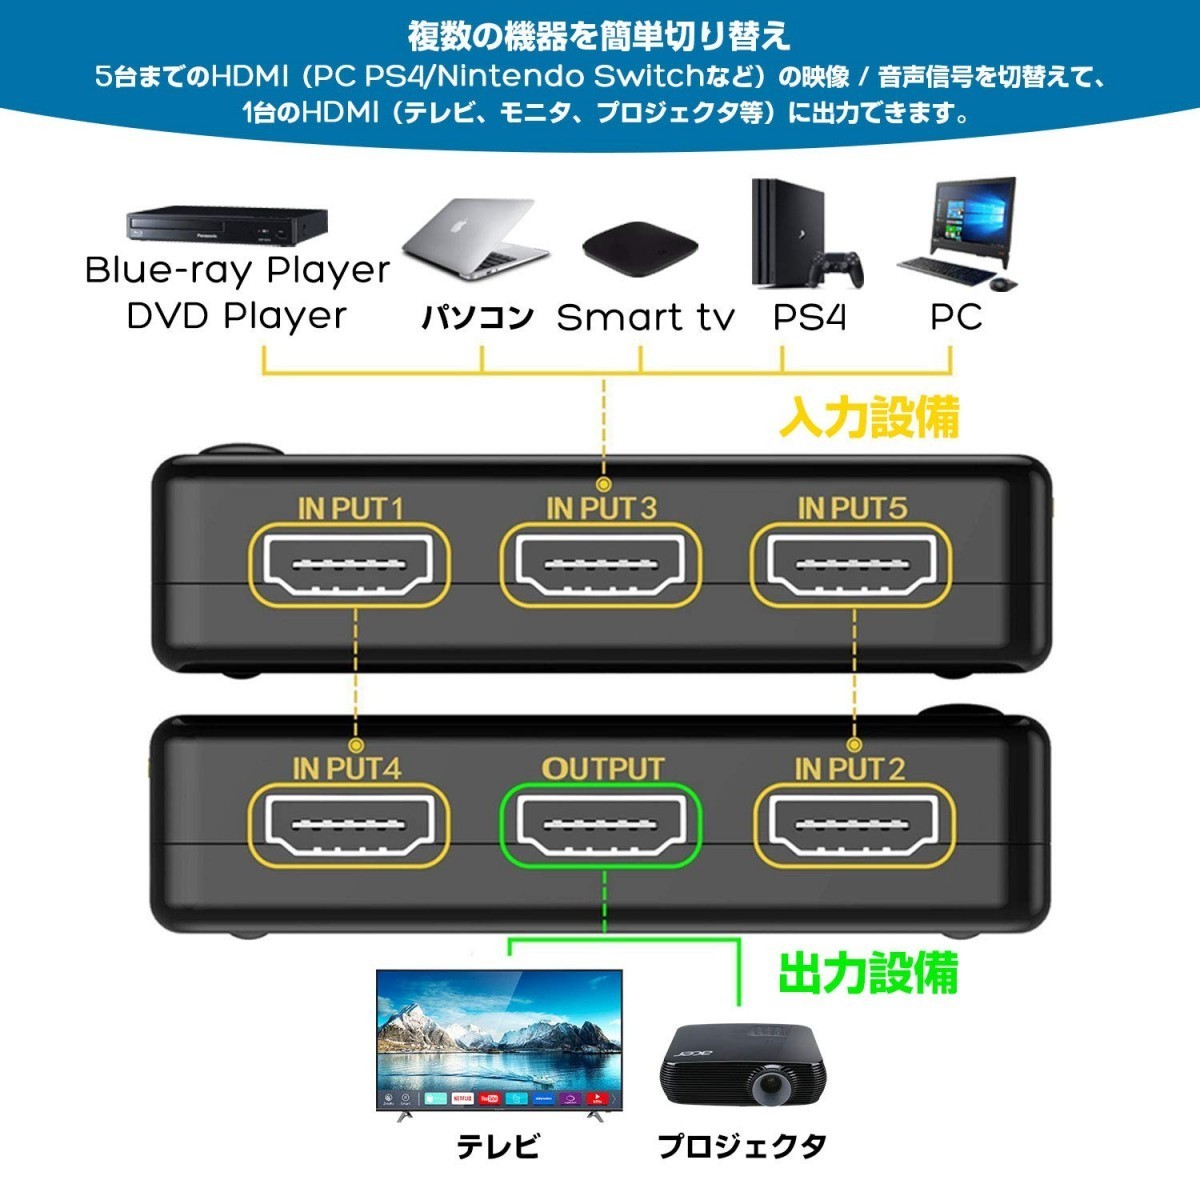 HDMI селектор 5 ввод 1 мощность HDMI дистрибьютор автоматика ручной переключатель USB подача тока с дистанционным пультом 4K?3D PS4,Nintendo Switch, и т.п. соответствует 